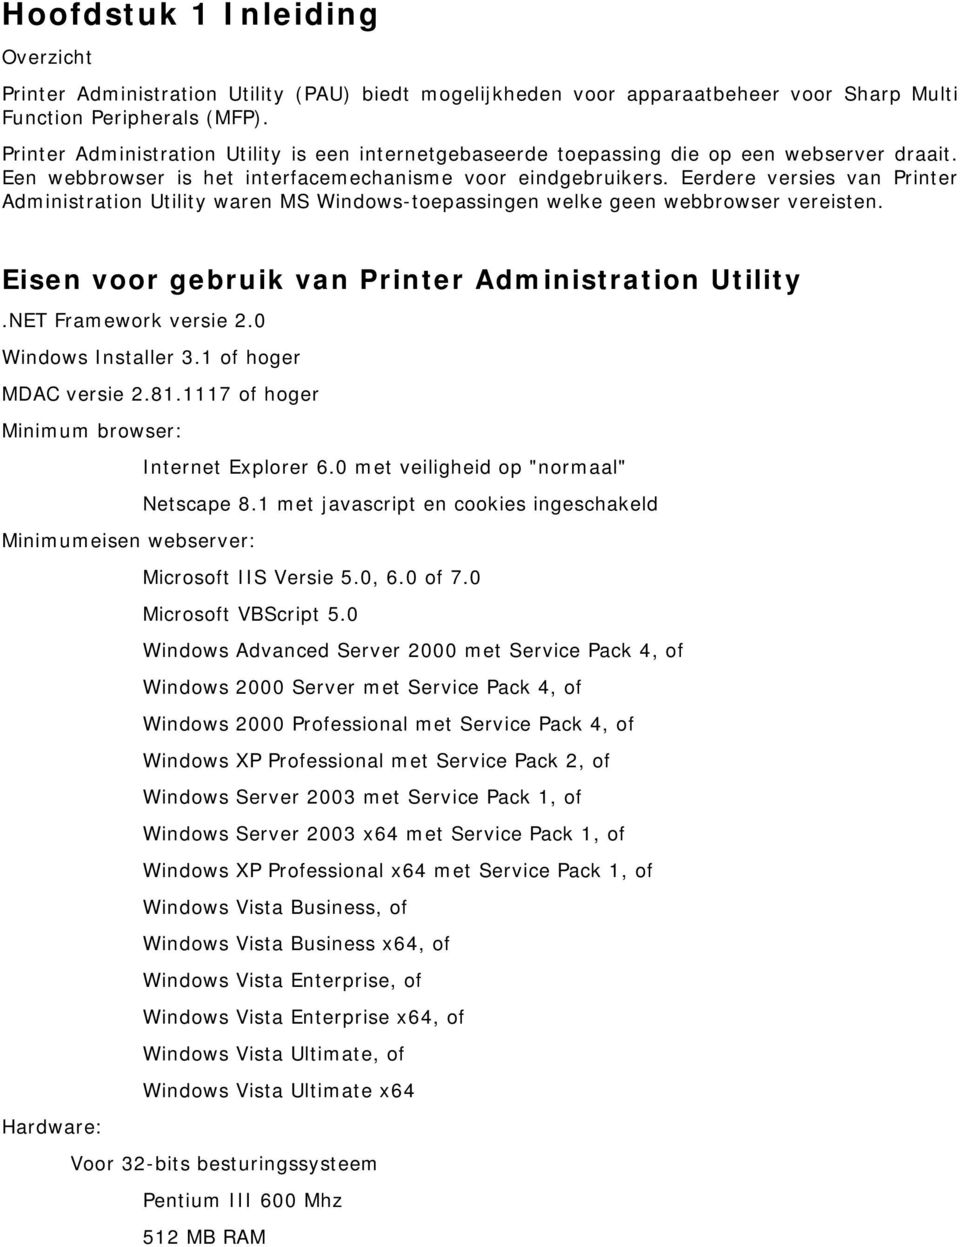 Eerdere versies van Printer Administration Utility waren MS Windows-toepassingen welke geen webbrowser vereisten. Eisen voor gebruik van Printer Administration Utility.NET Framework versie 2.